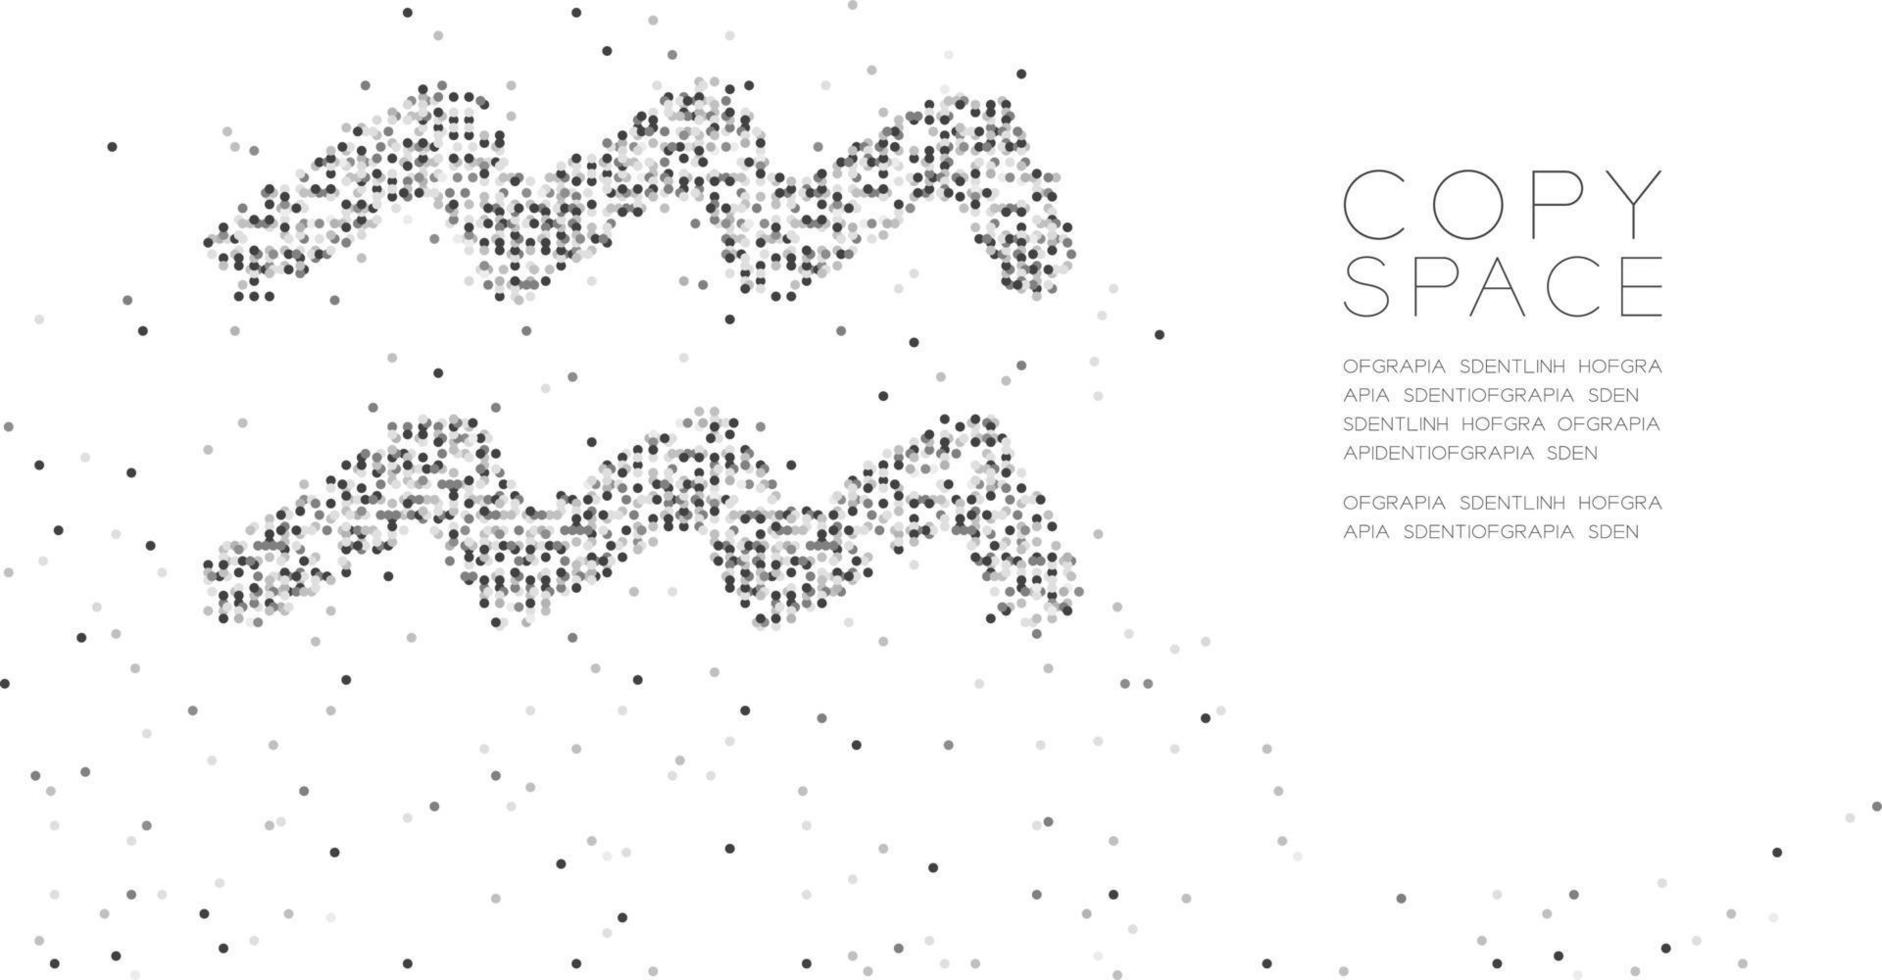 abstracte geometrische cirkel stip pixel patroon Waterman sterrenbeeld vorm, ster sterrenbeeld concept ontwerp zwarte kleur illustratie op witte achtergrond met kopie ruimte, vector eps 10